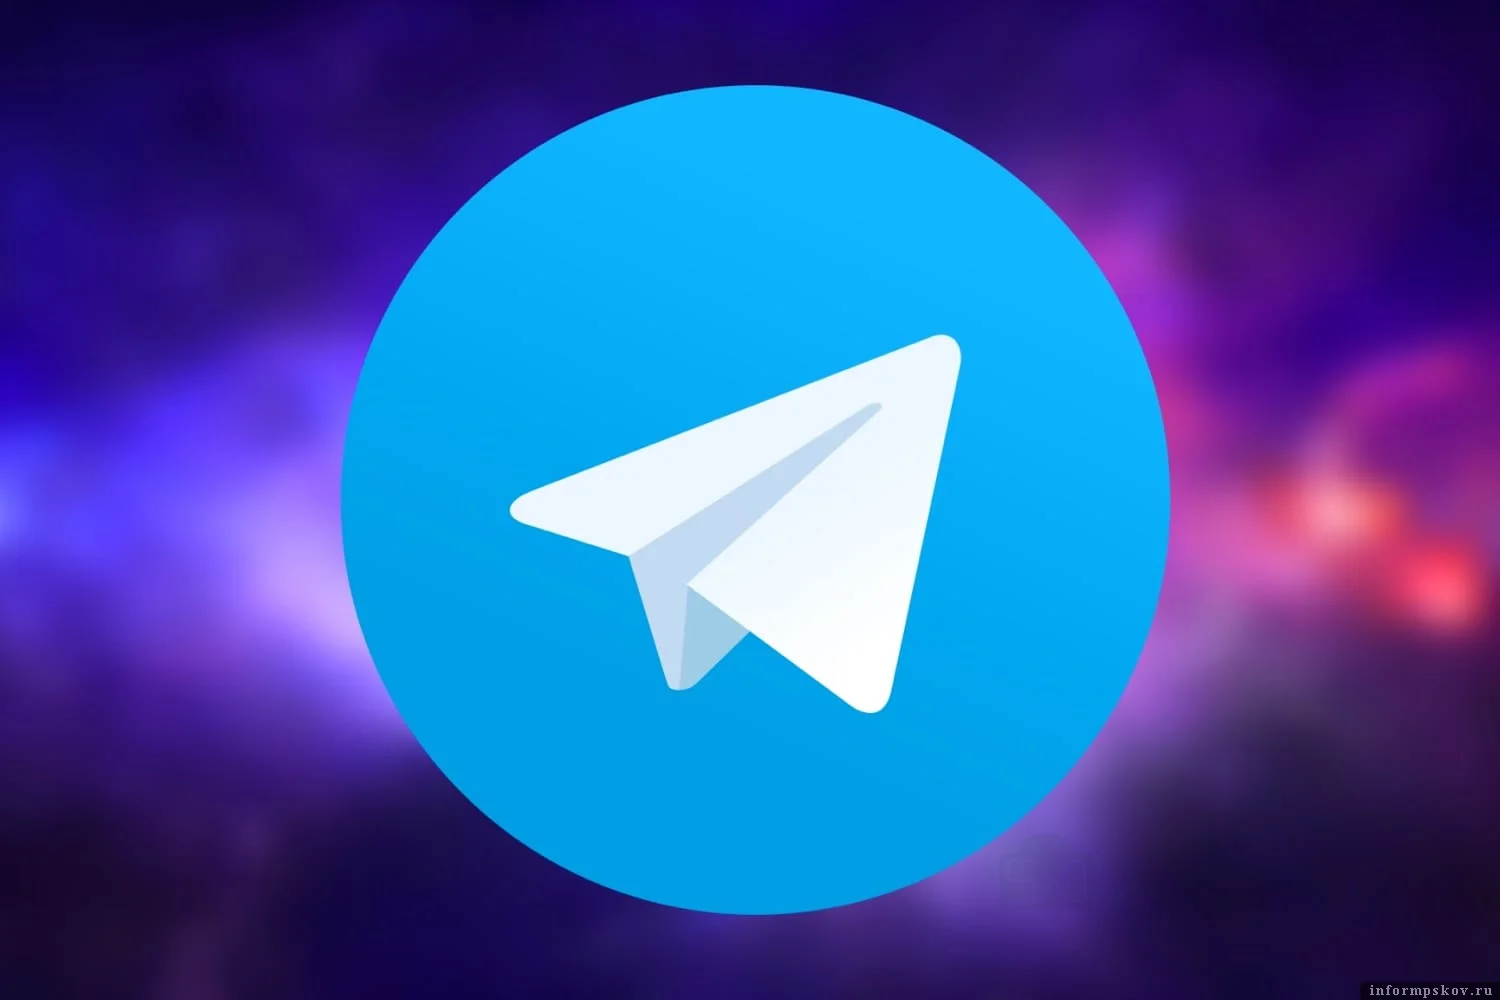 Telegram took over a large number of nicknames